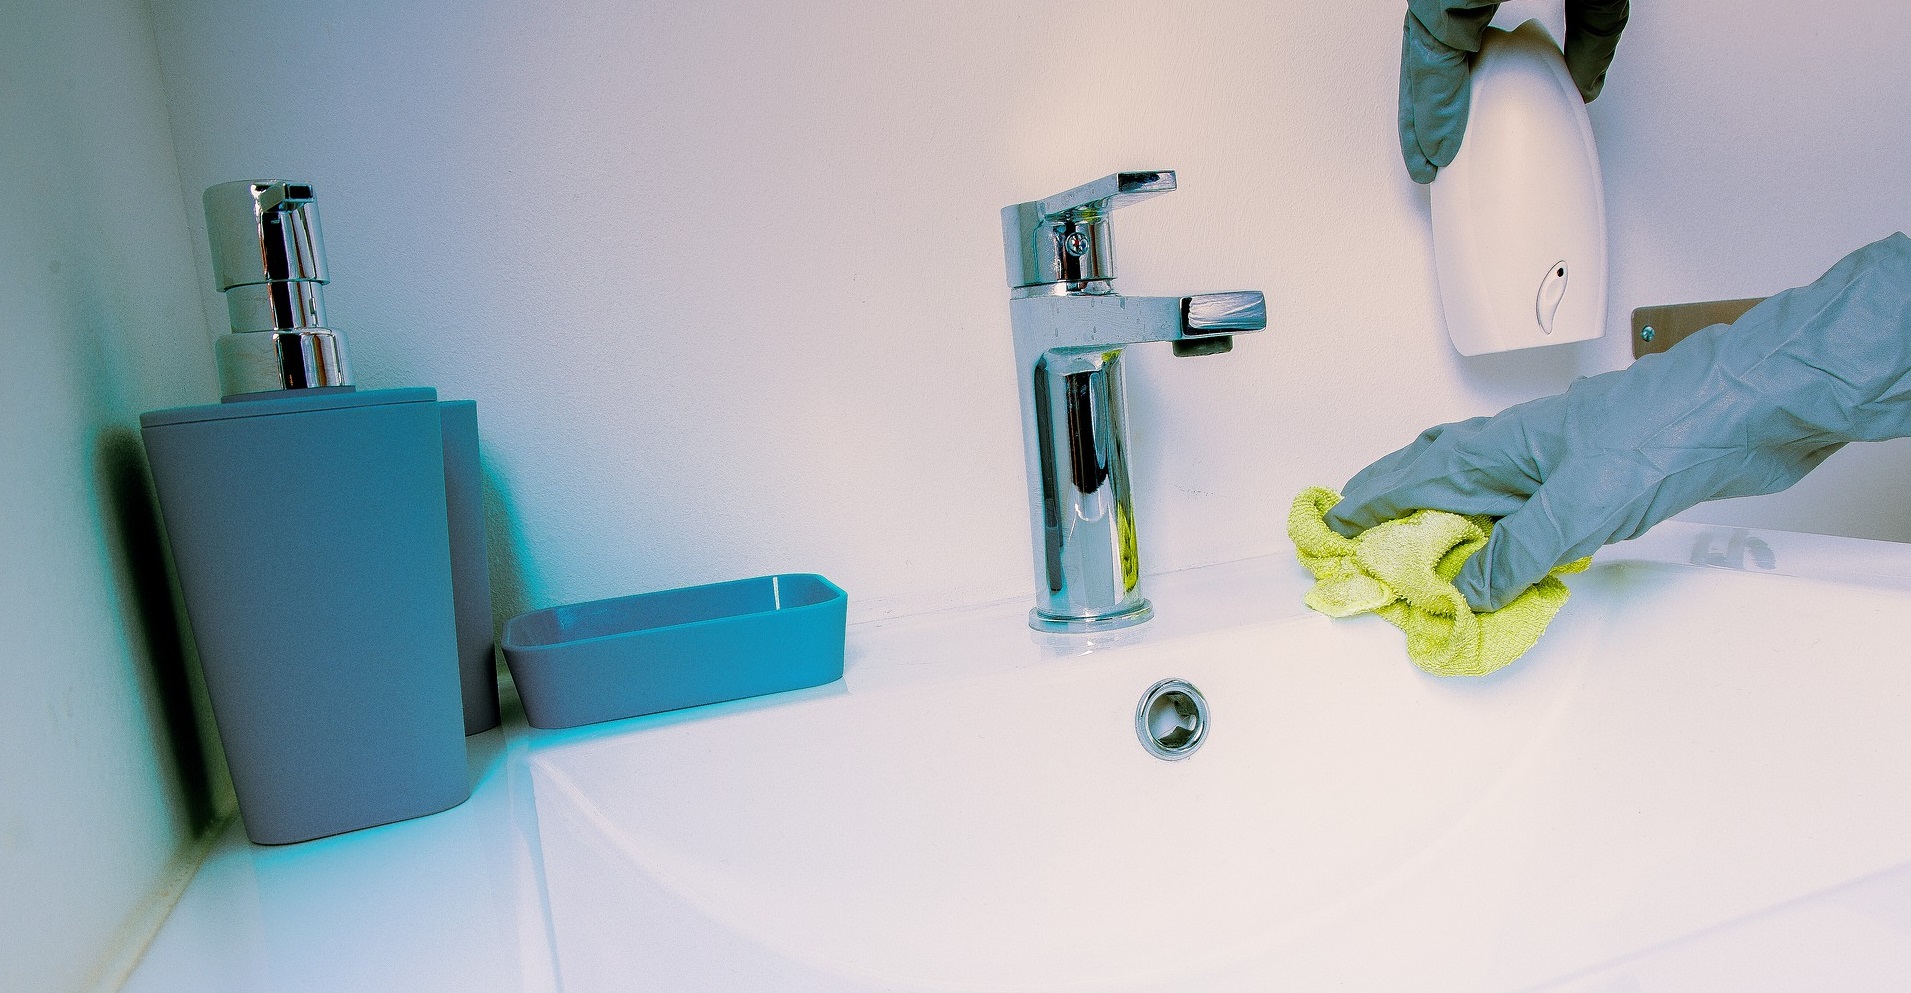 expertos detallan por qué no debes mezclar lavalozas con cloro